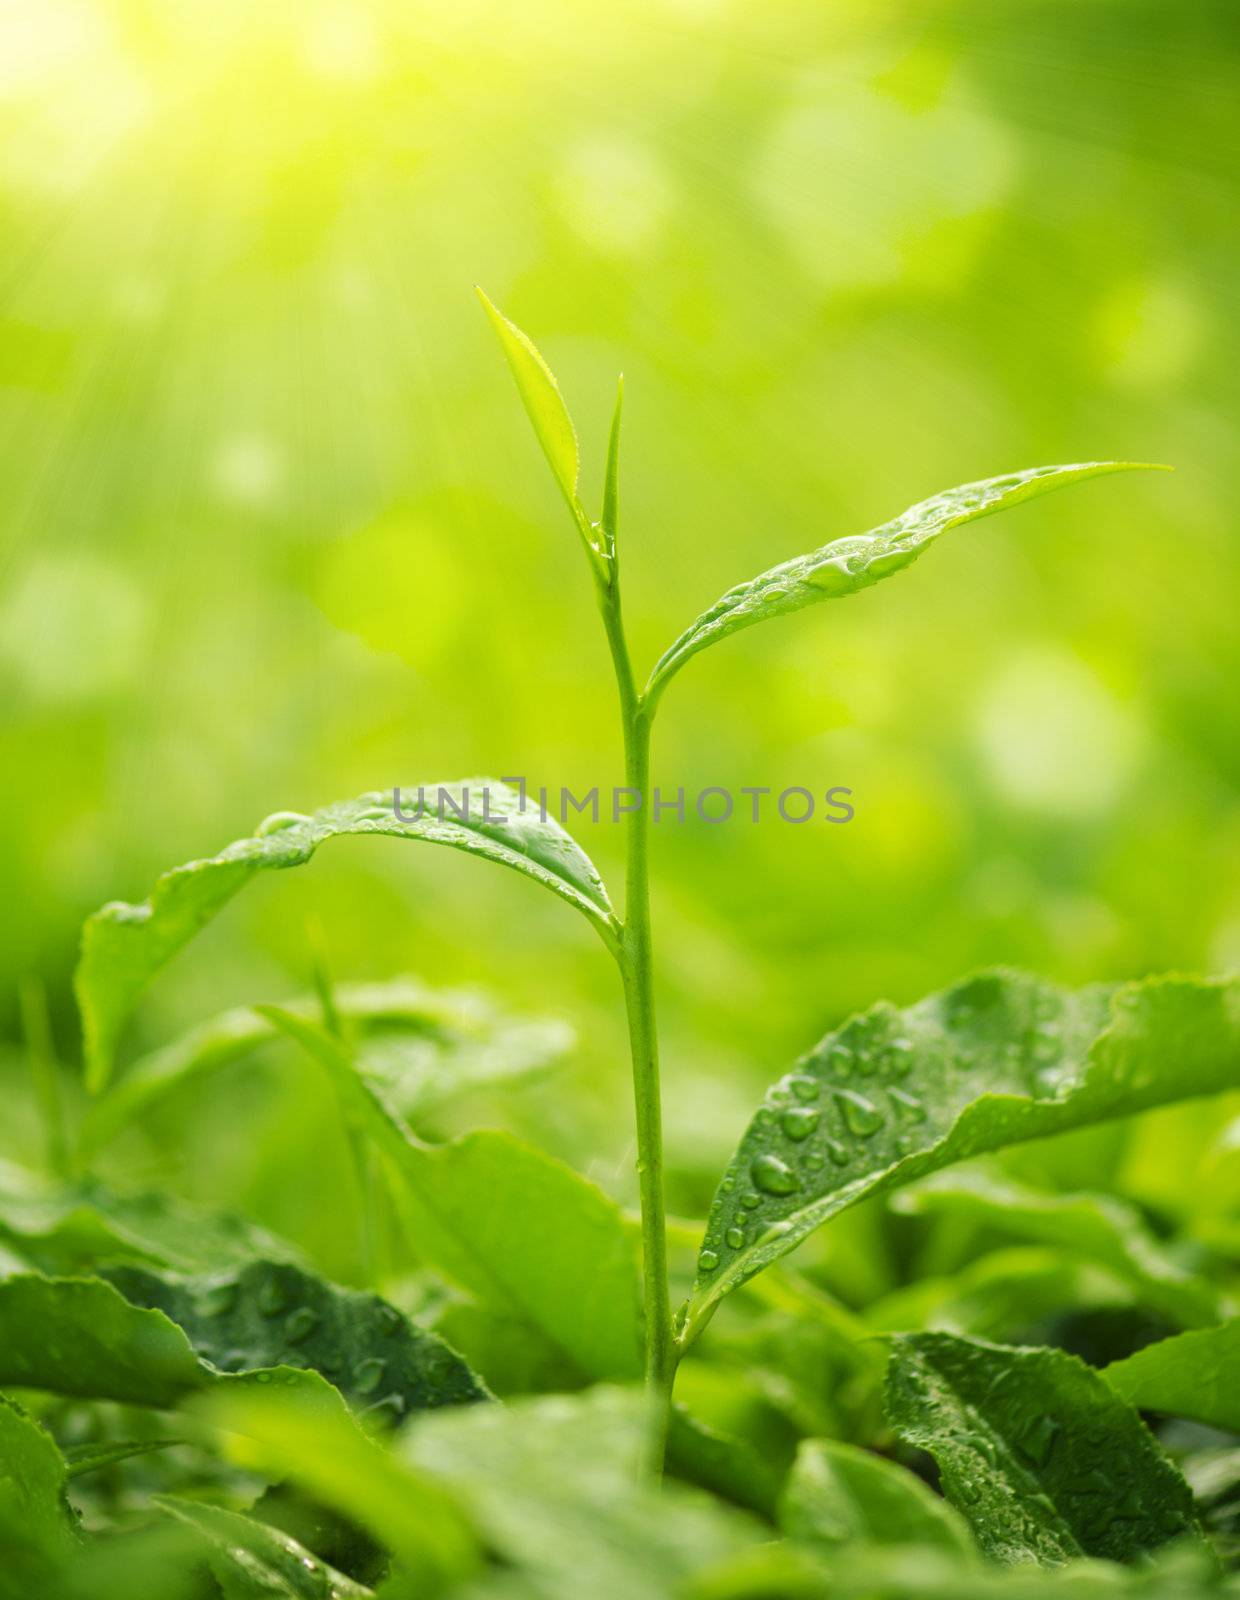 Tea Leaf with morning golden sunlight, water dews on leaf